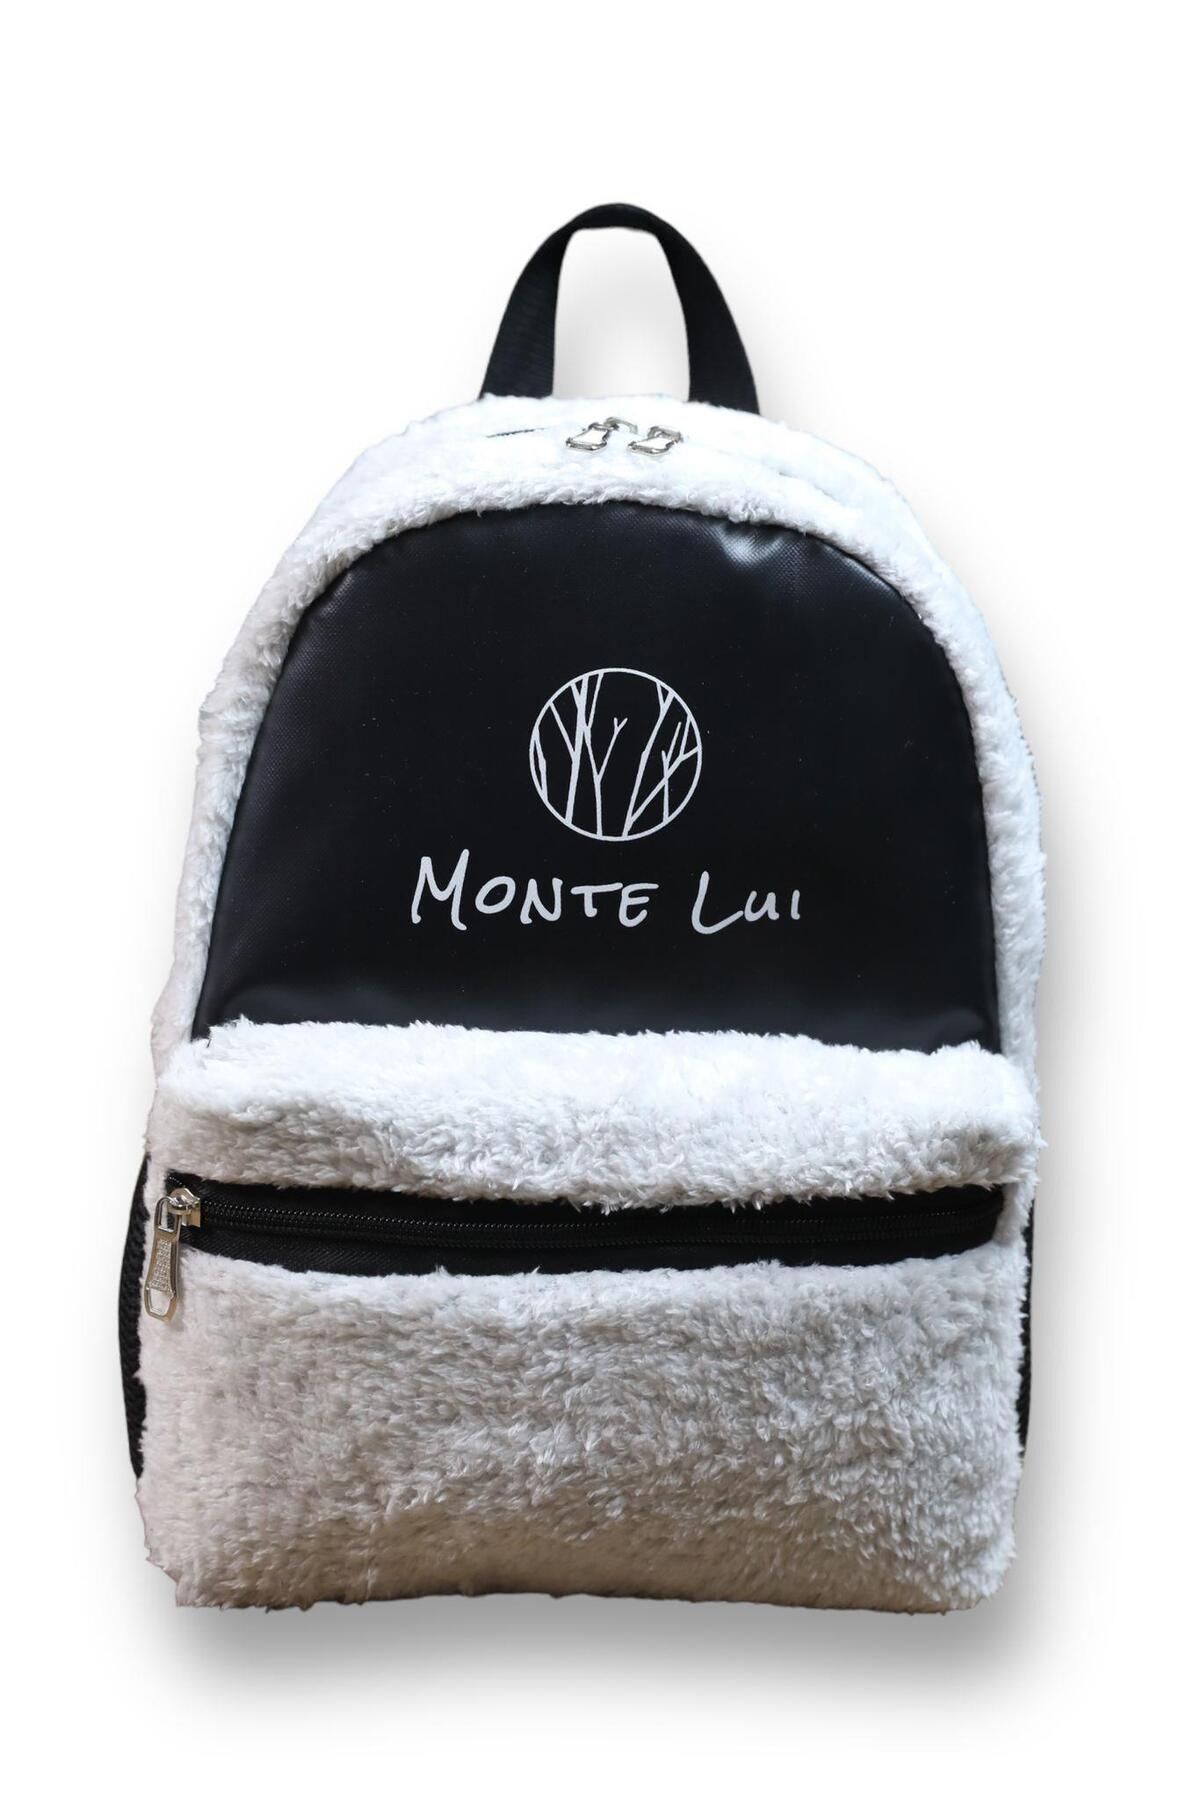 Monte Lui Çanta Modelleri, Mnt3637 Peluş Sırt Çantası Beyaz, Kadin Canta, Canta